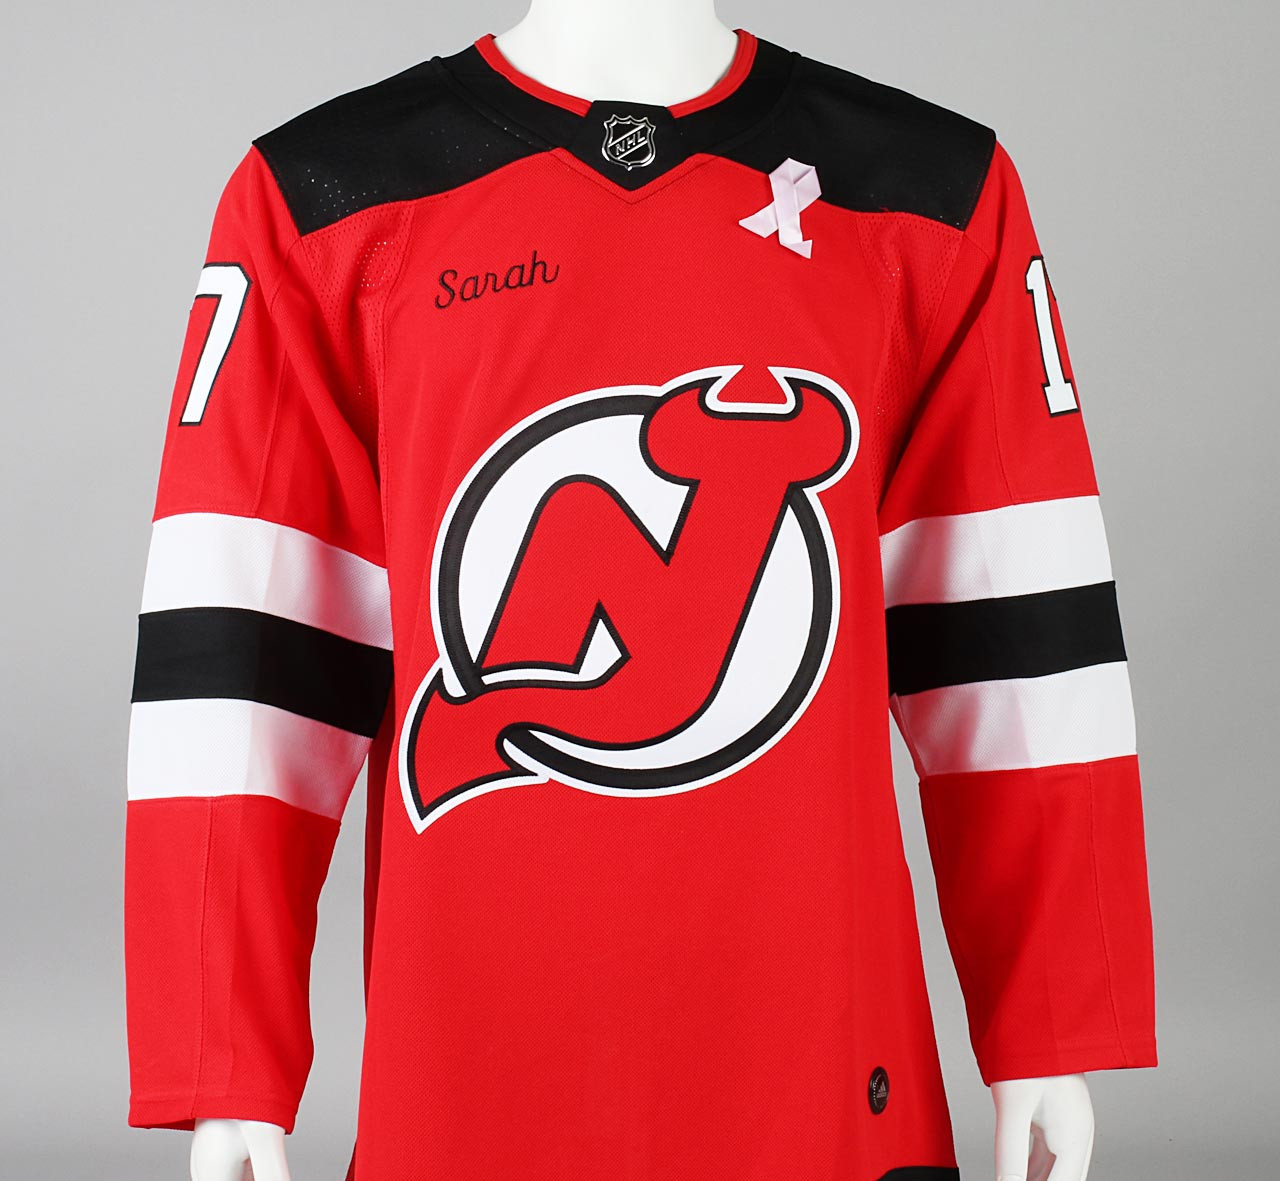 New Jersey Devils: A timeline of jerseys